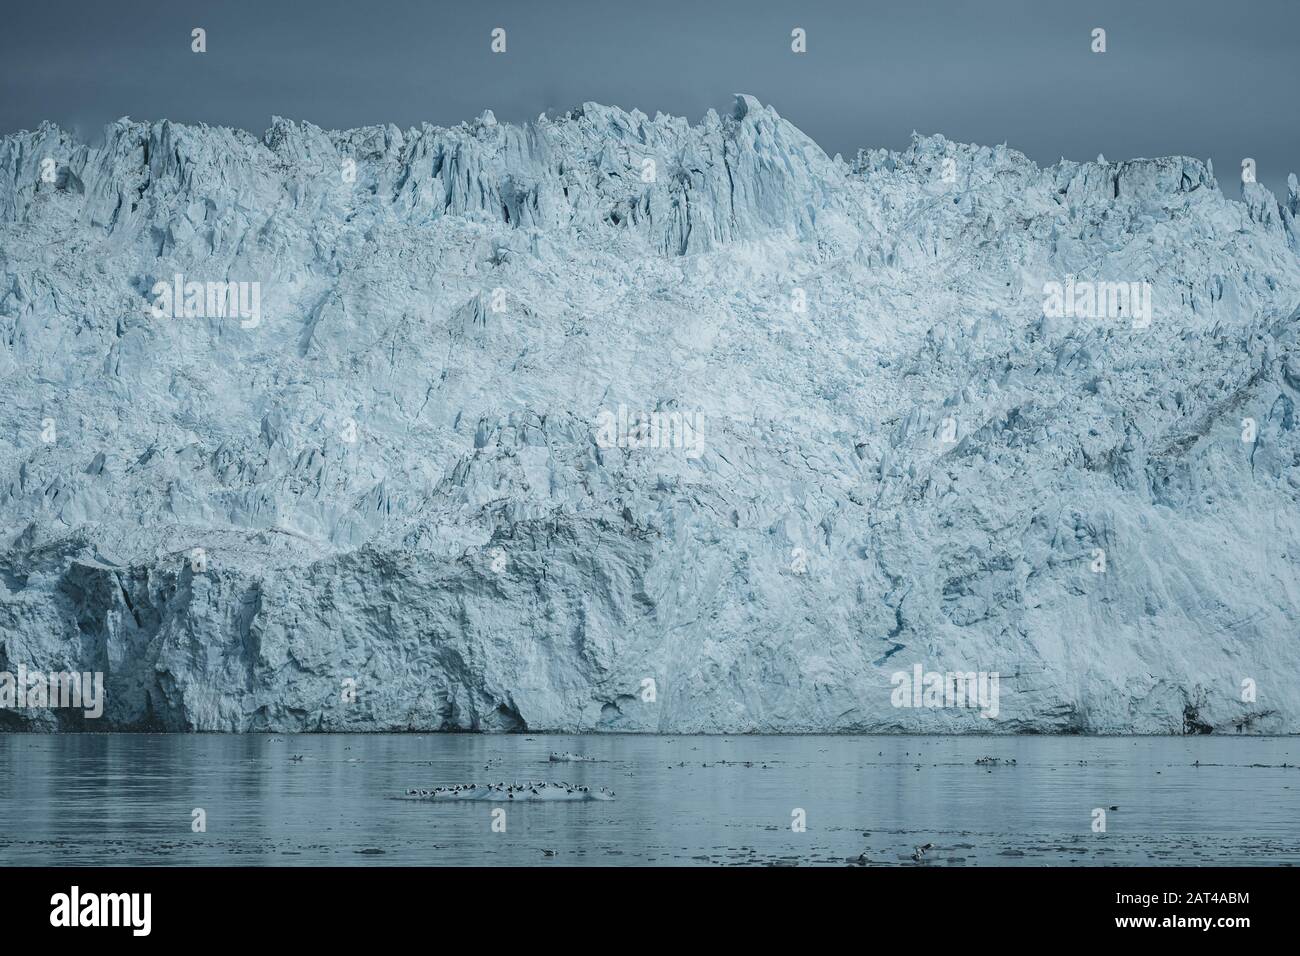 Rapprochée sur glacier énorme mur. De gros morceaux de glace se détachent. Moody et temps couvert. Eqip Sermia appelé glacier Eqi Glacier. Le groenlandais Banque D'Images